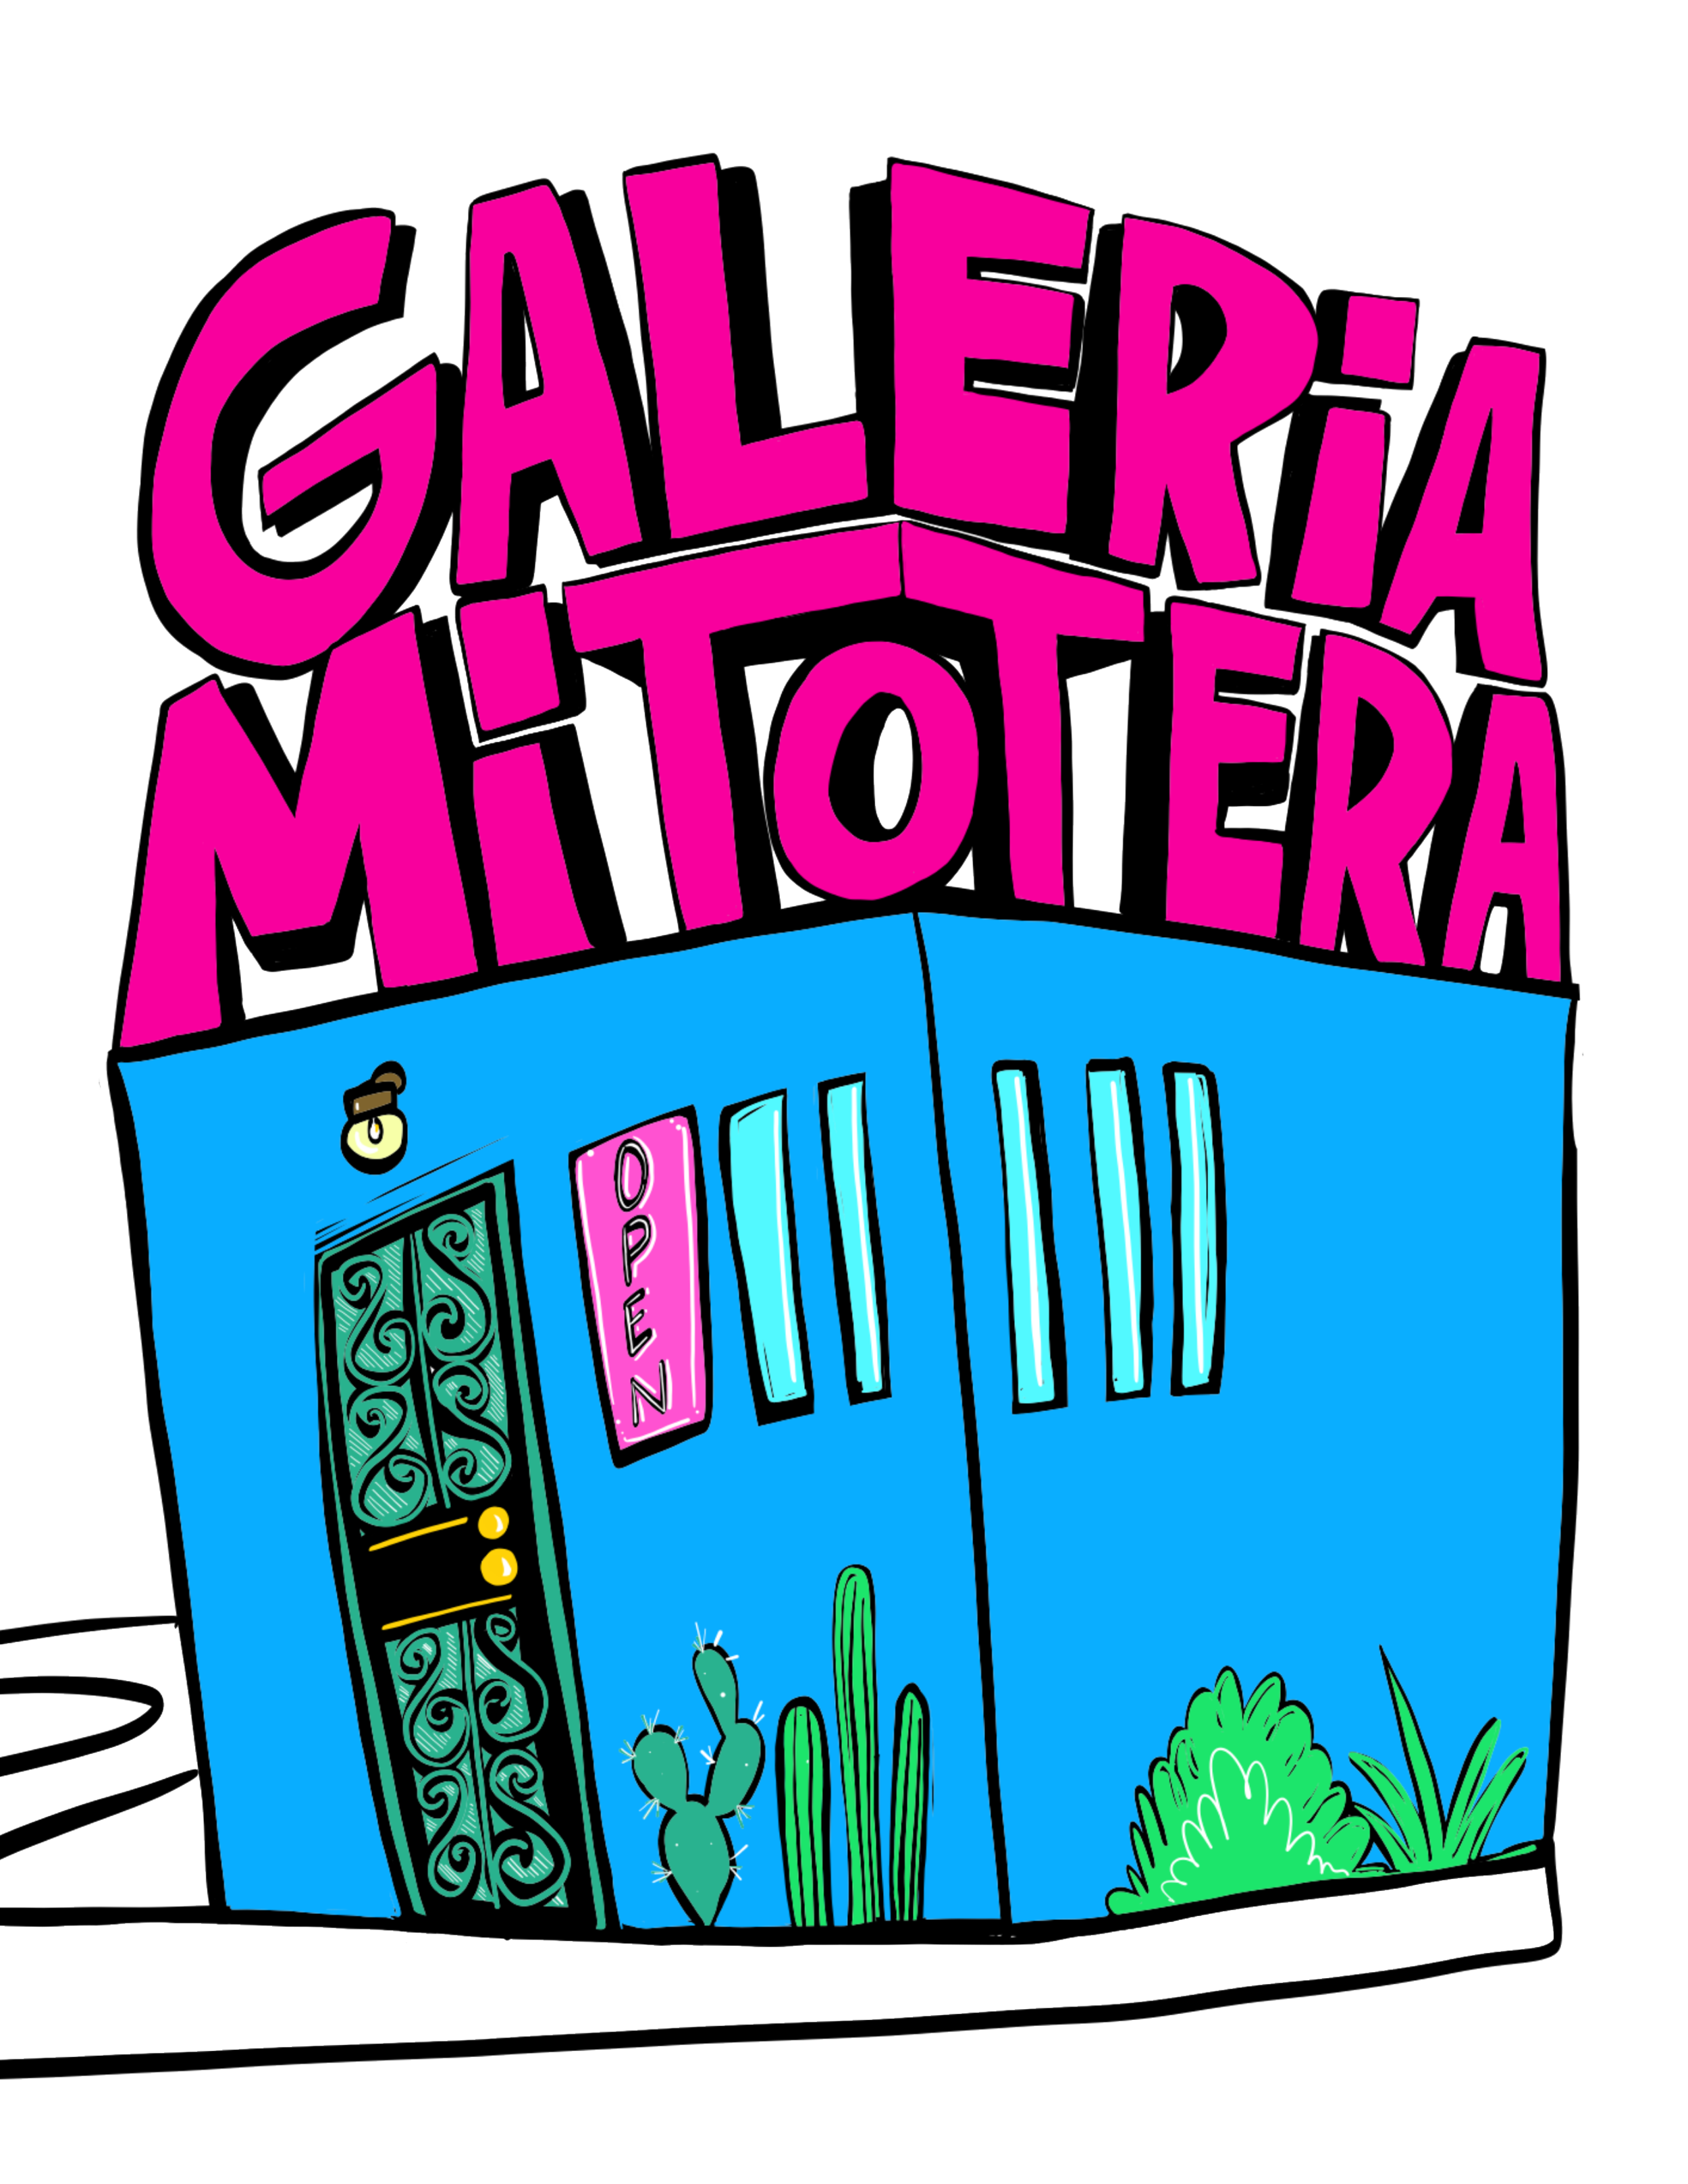 Galeria Mitotera